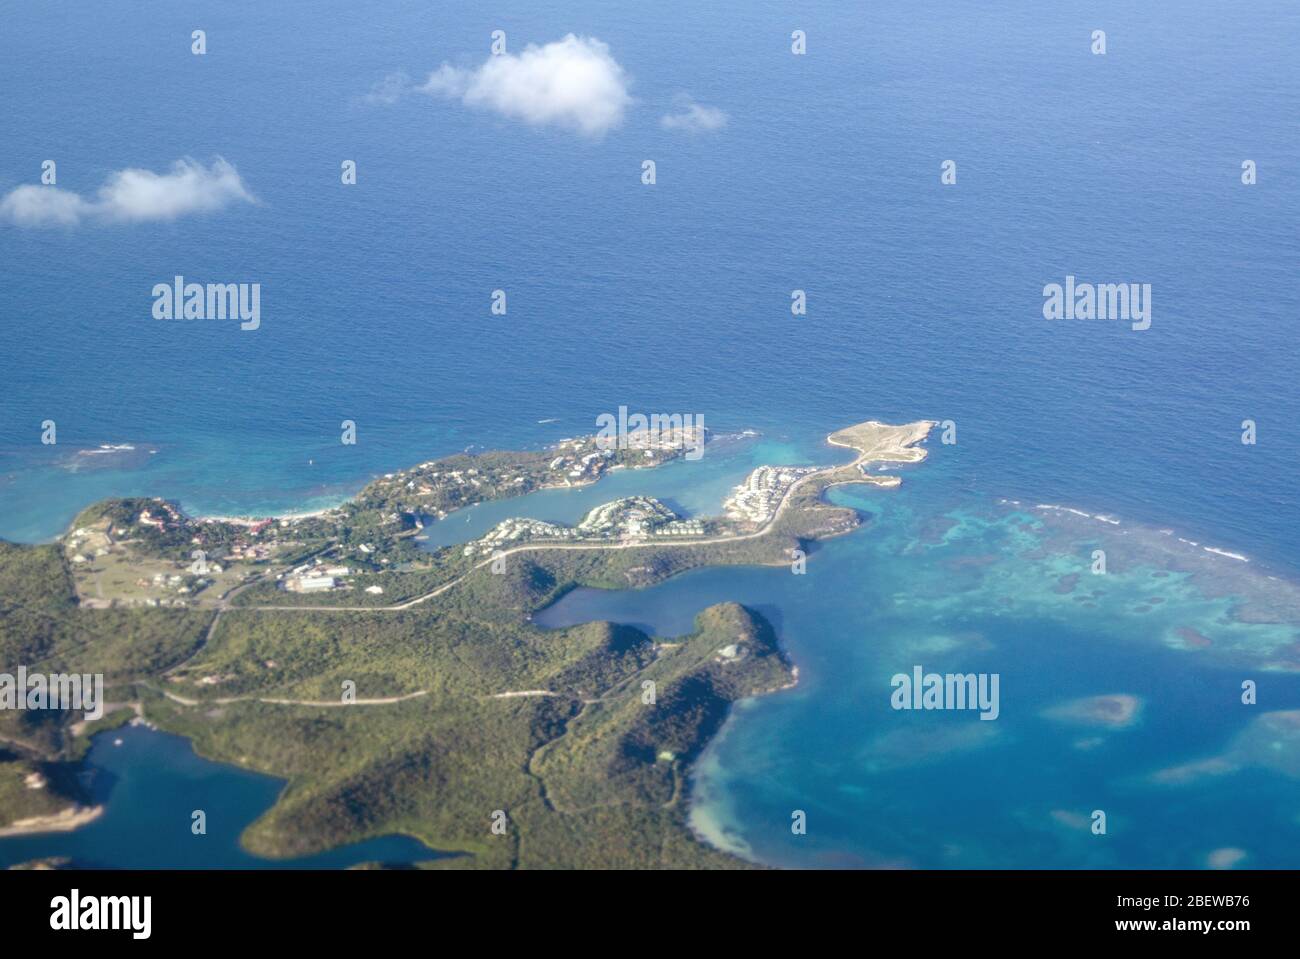 Vista aérea del Parque Nacional Devil's Bridge, la Bahía de Dian, el Pineapple Beach Club y Long Bay en la costa noreste de Antigua en el Mar Caribe. Foto de stock